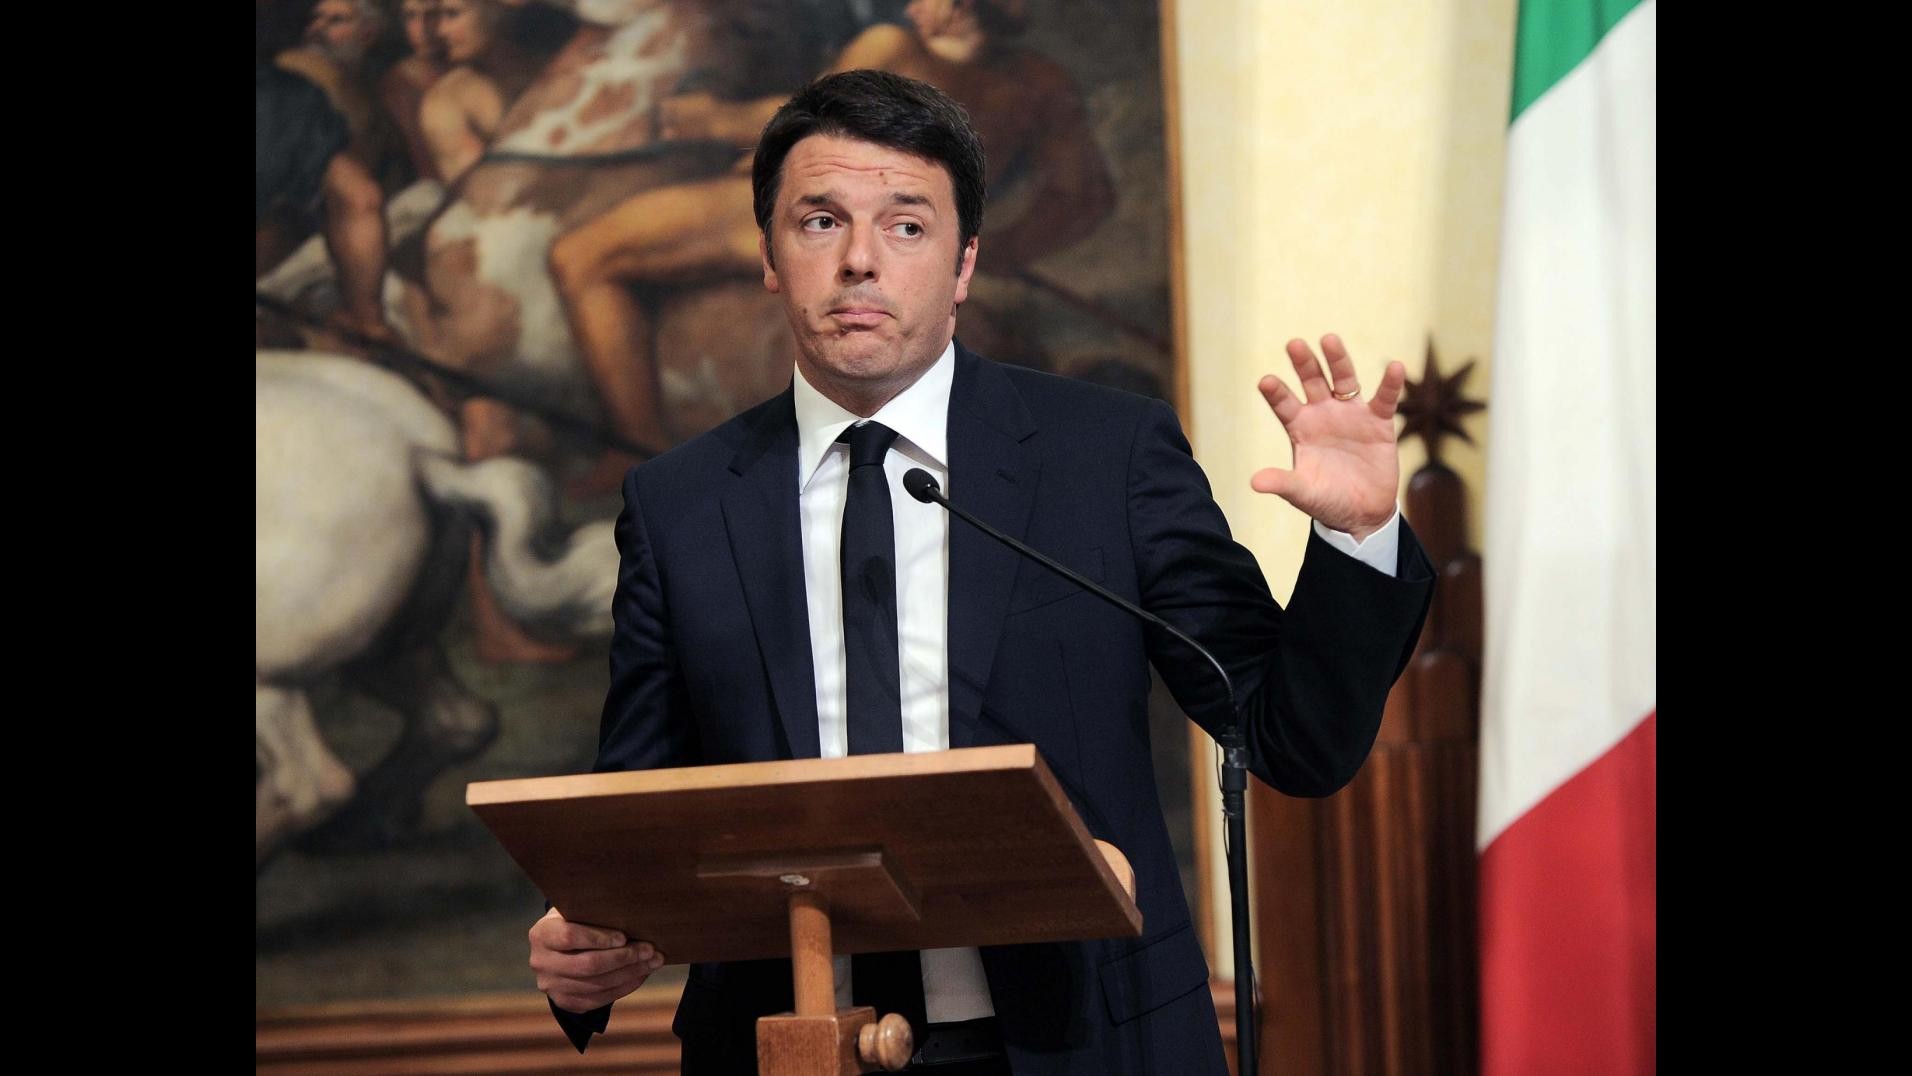 Agroalimentare, Renzi: Con le regole Ue l’Italia si è rinsecchita